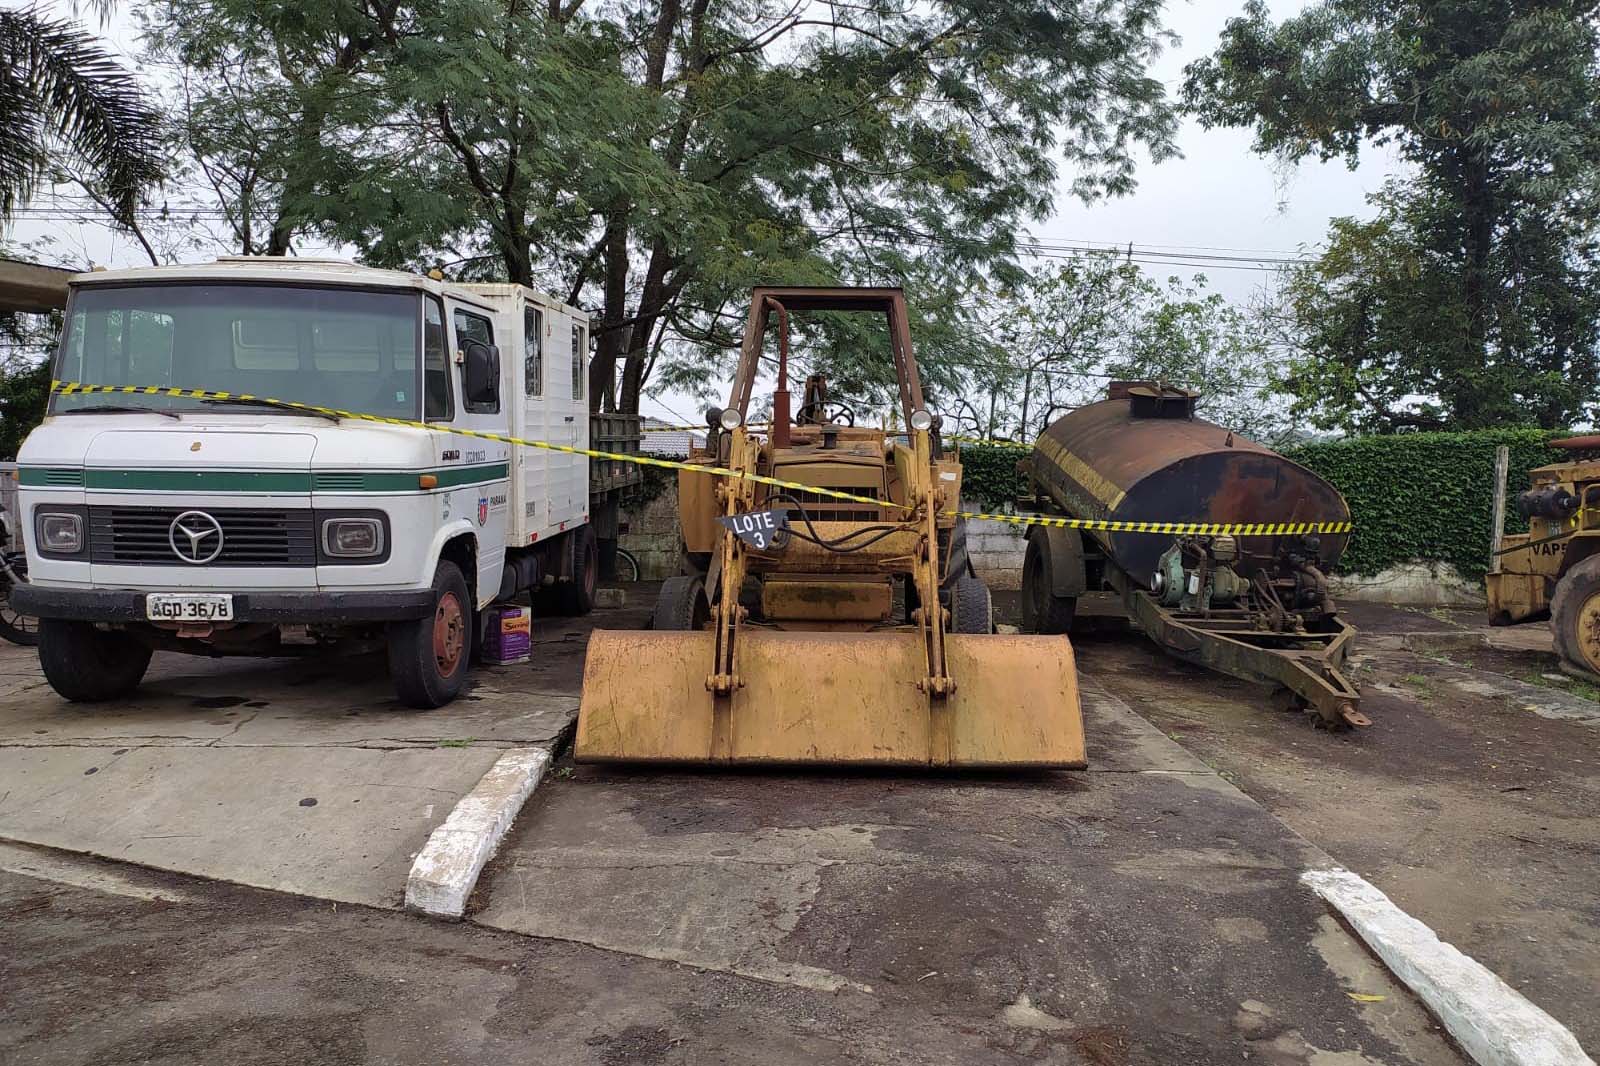 Imagem DER/PR vai doar mais de 250 equipamentos e veículos pesados a prefeituras